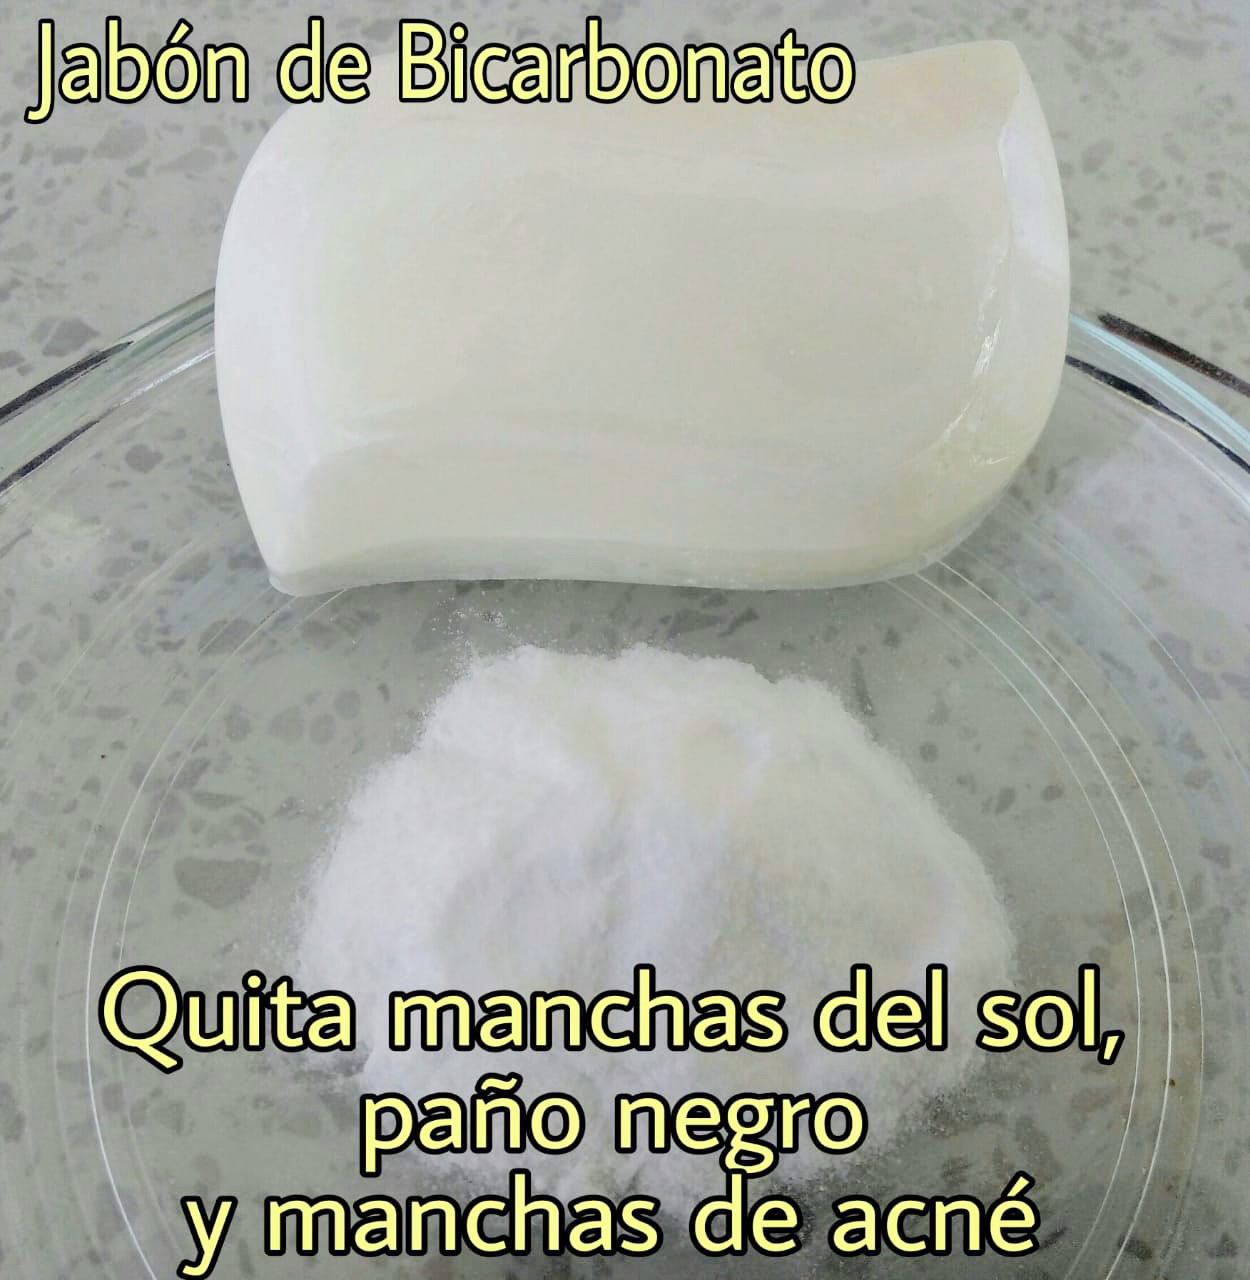 jabon de bicarbonato